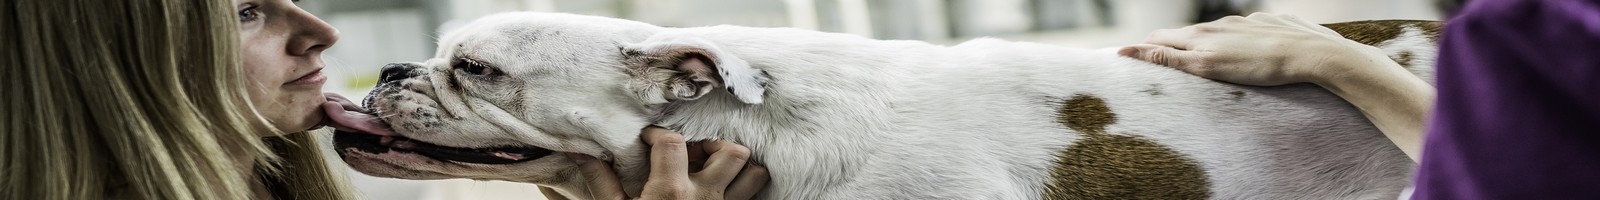 Le projet Kdog expérimente le dépistage précoce du cancer du sein par des chiens